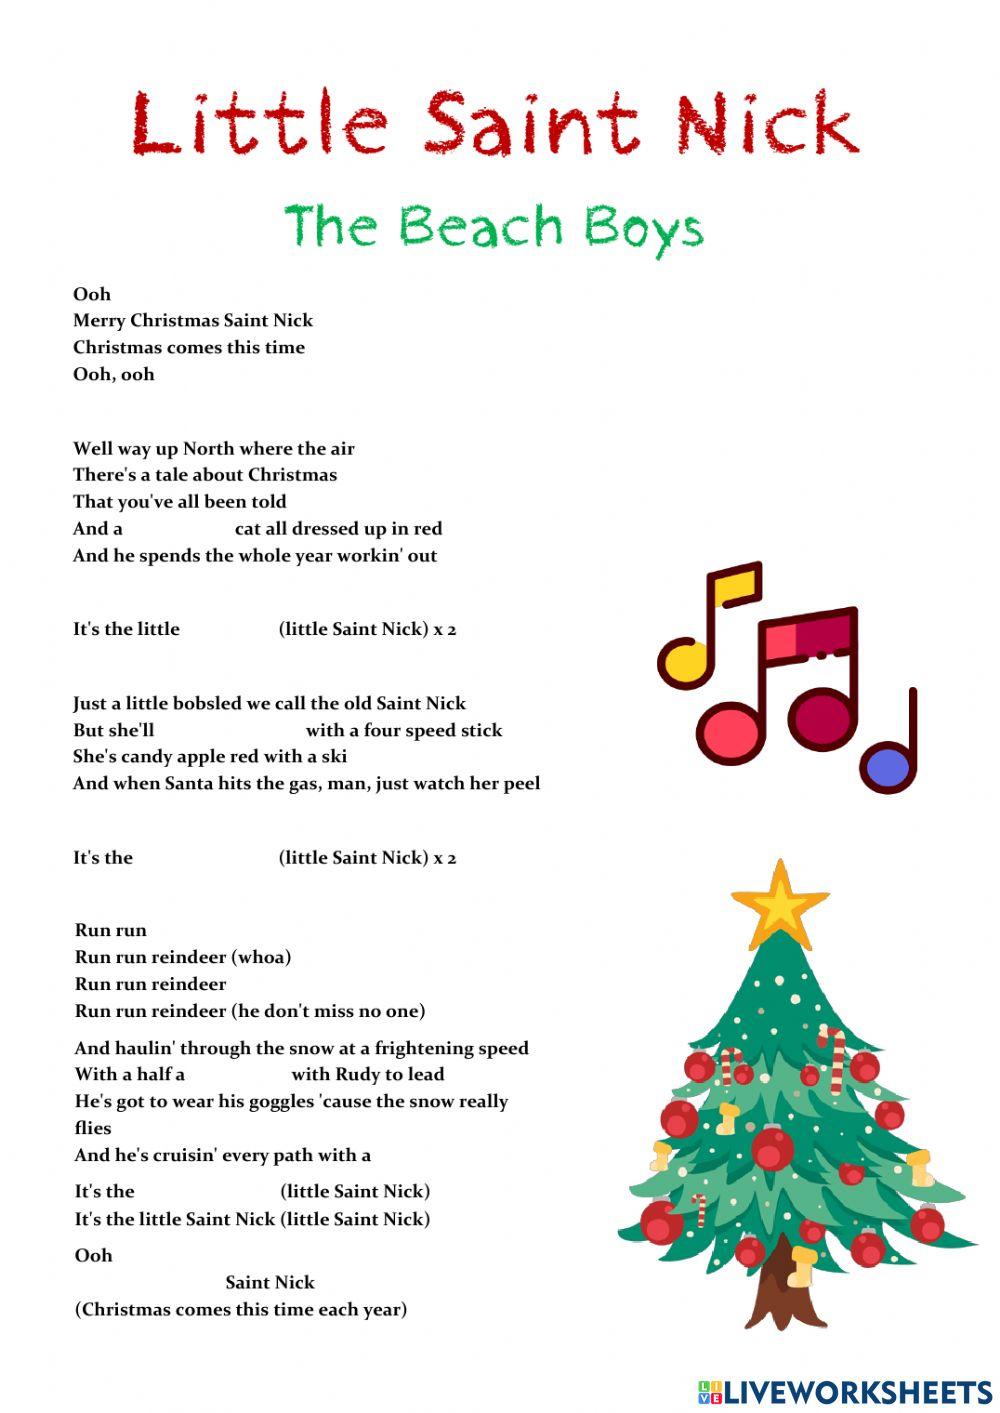 The Beach Boys - Little Saint Nick (Official Video)